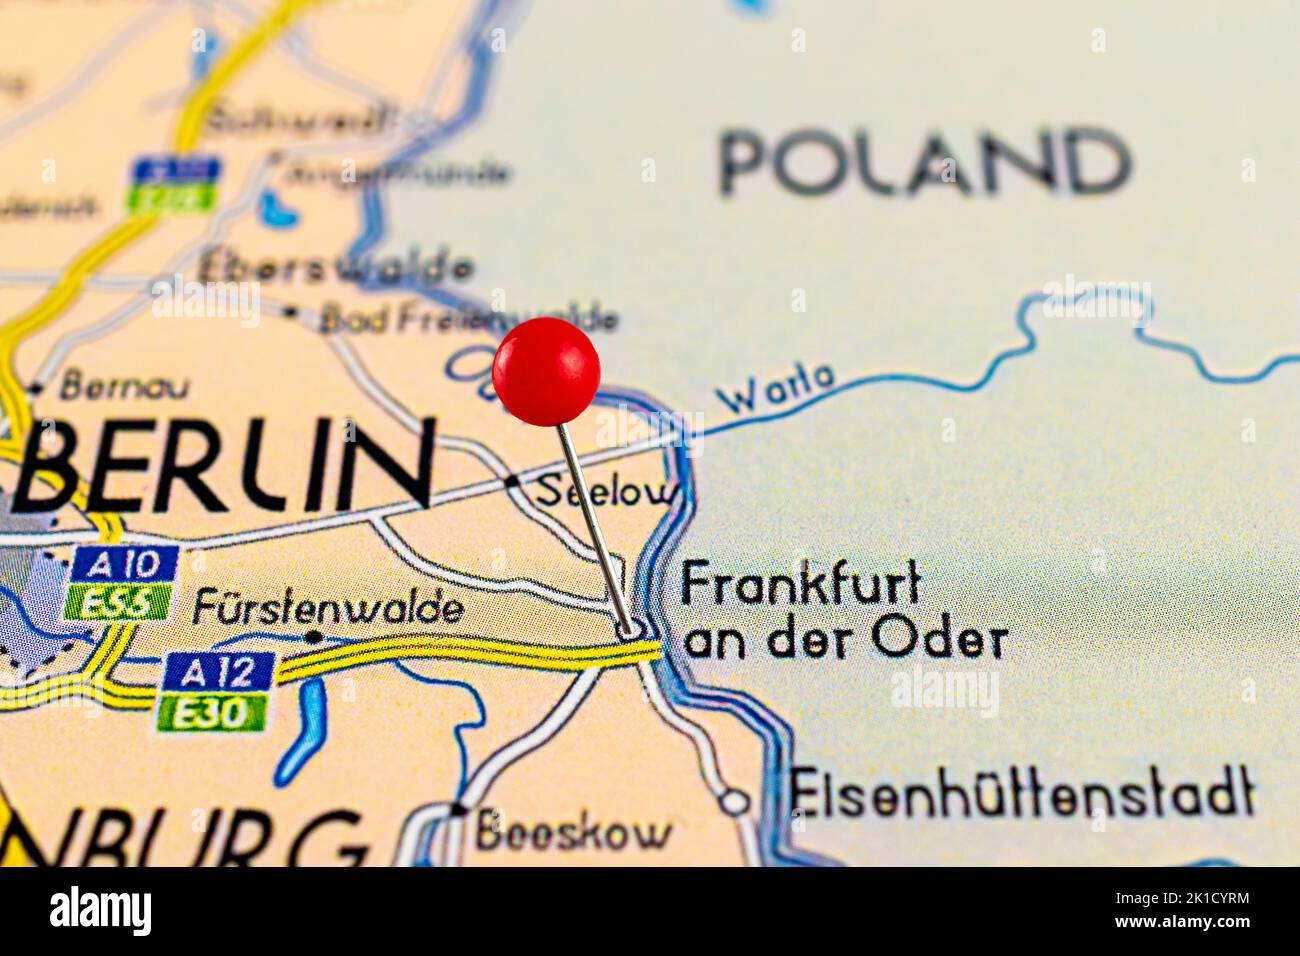 Frankfurt an der Oder map. Close up of Frankfurt an der Oder map with red pin. Map with red pin point of Frankfurt an der Oder in Germany. Stock Photo